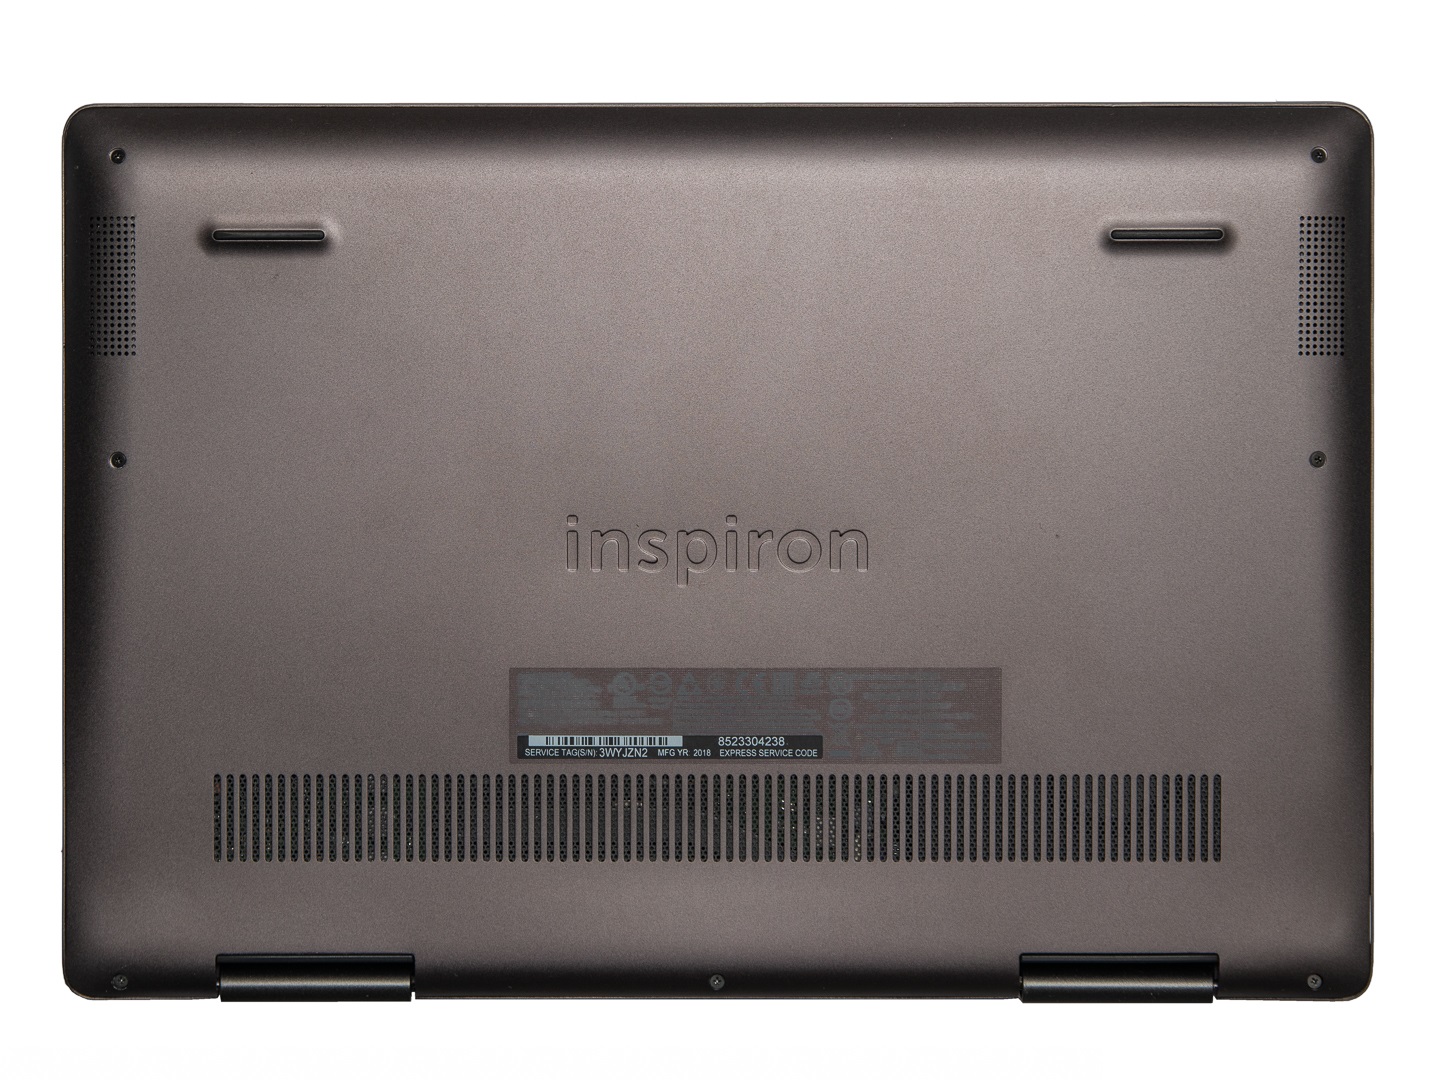 Đánh giá Dell Inspiron 13 7386 Black Edition 2 trong 1: Chưa thực sự xuất sắc !, trang tư vấn laptop